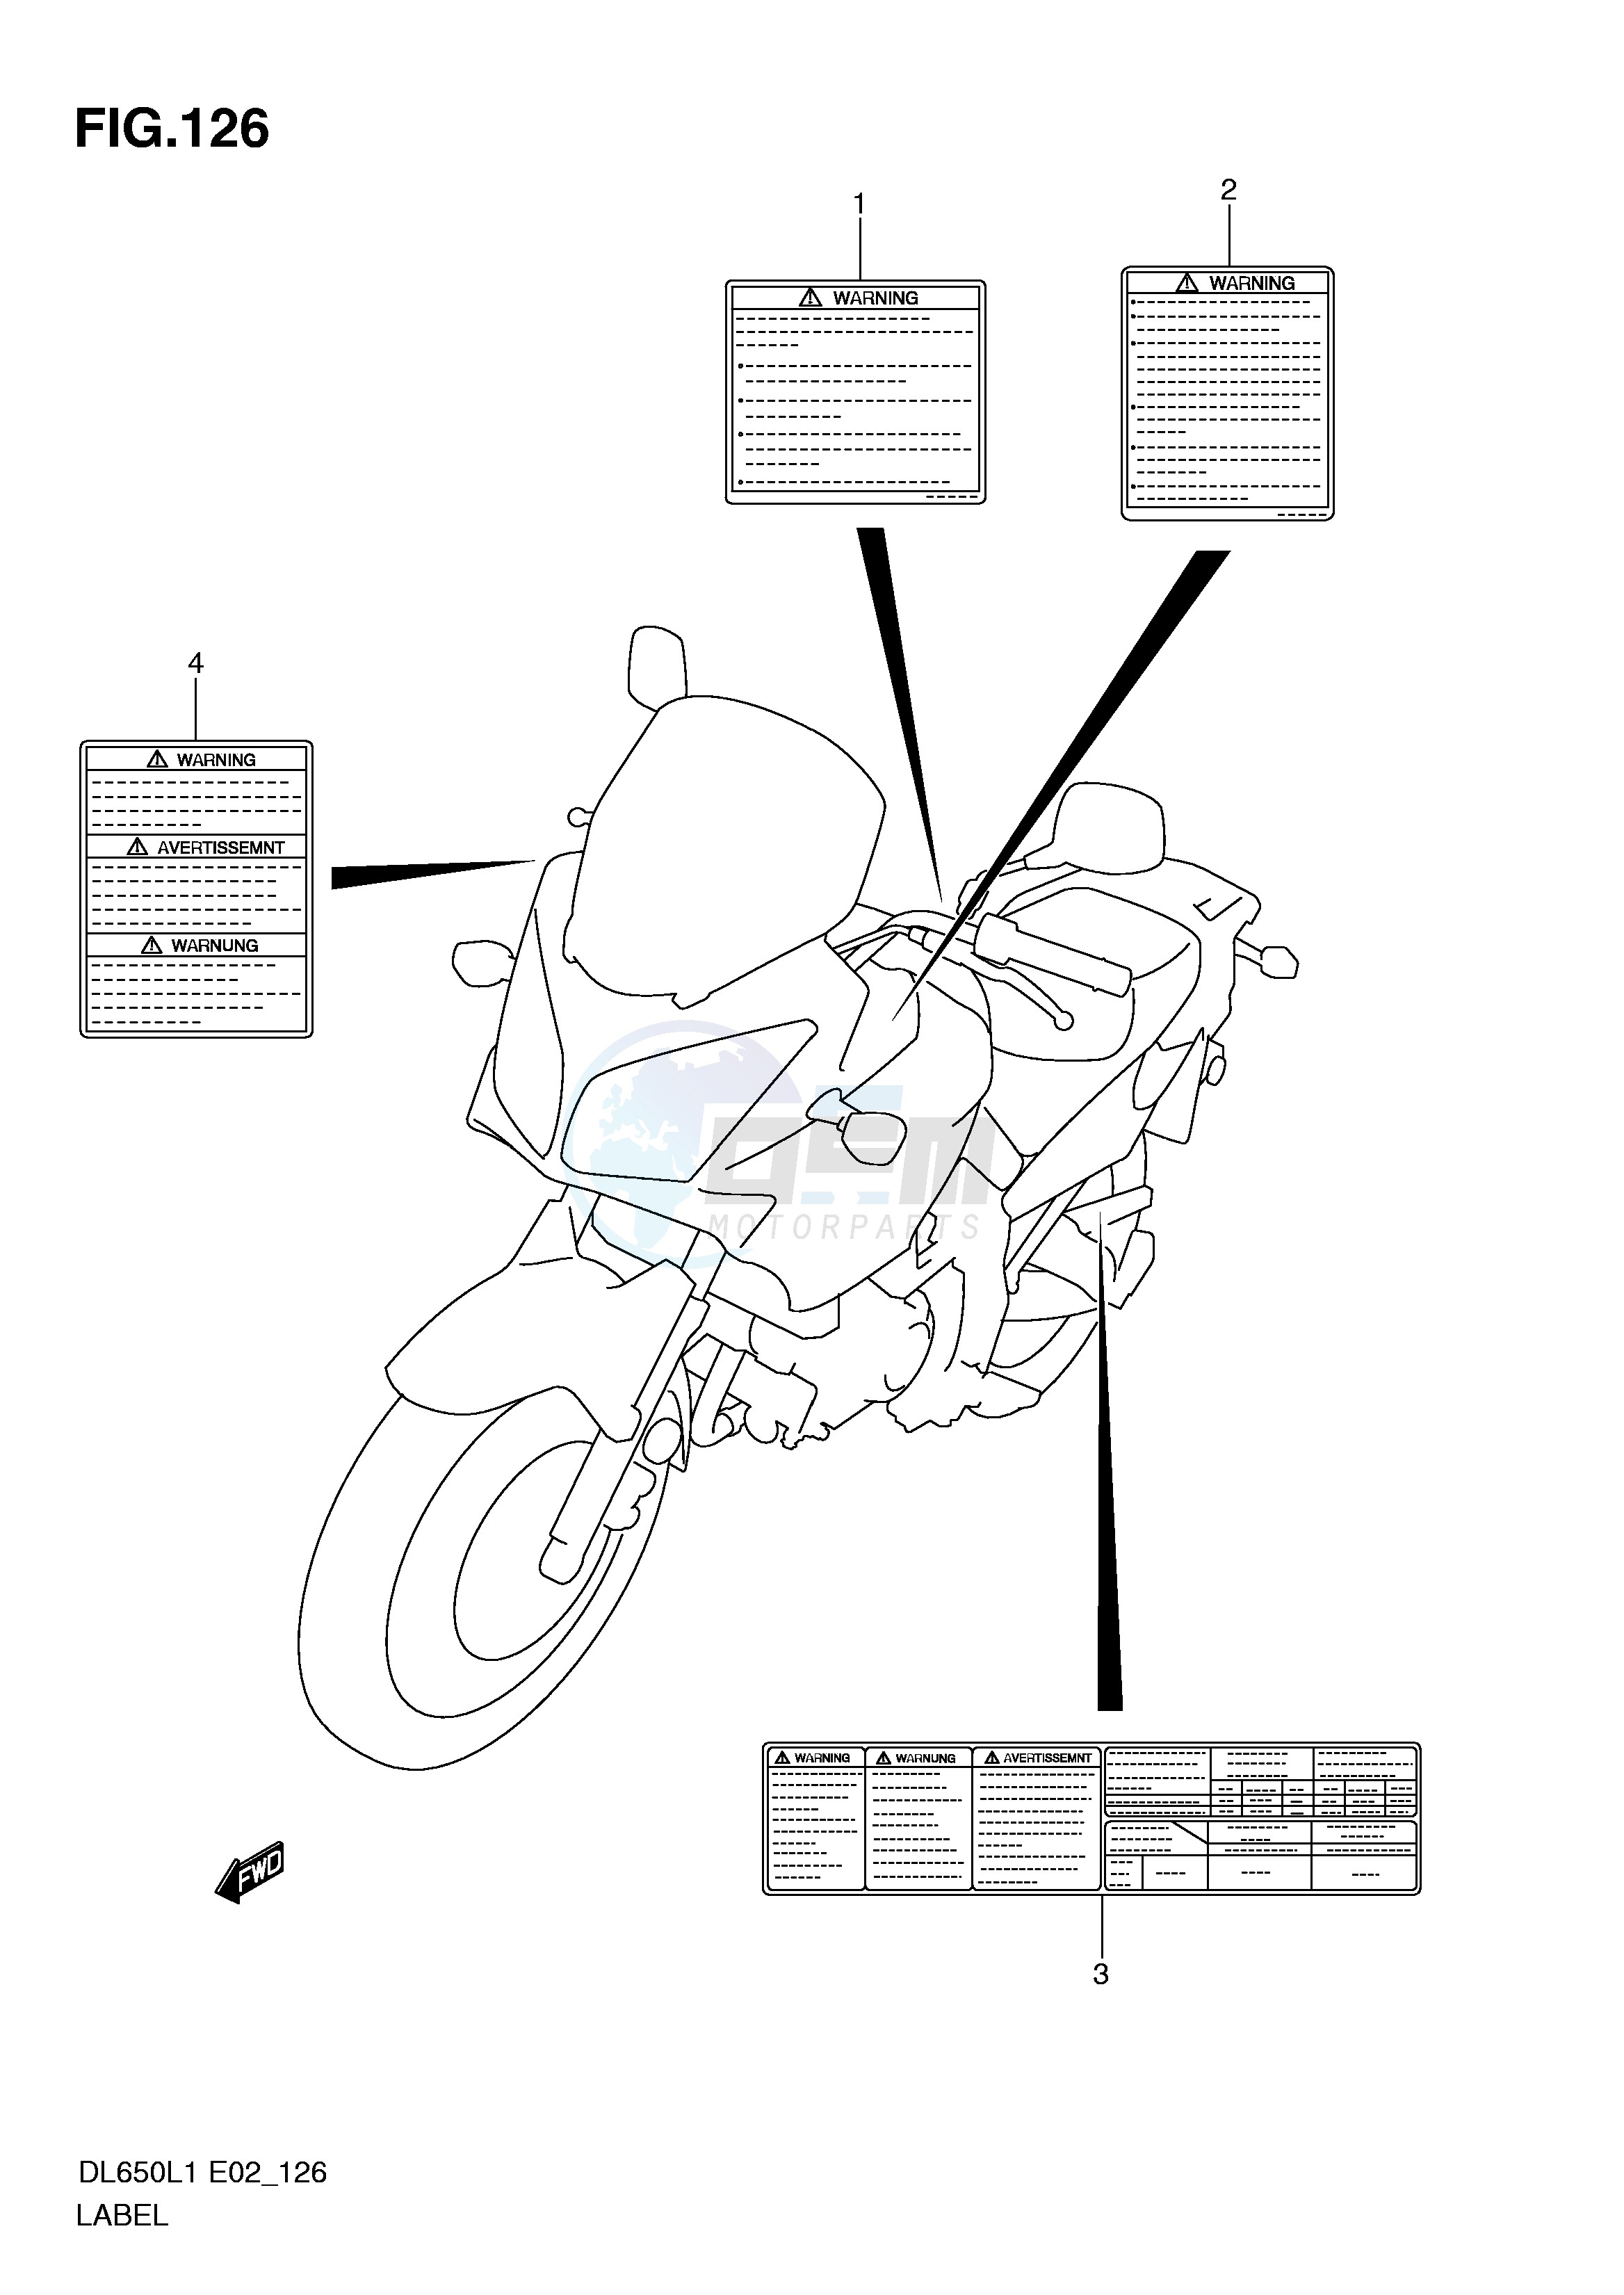 LABEL (DL650AL1 E24) blueprint